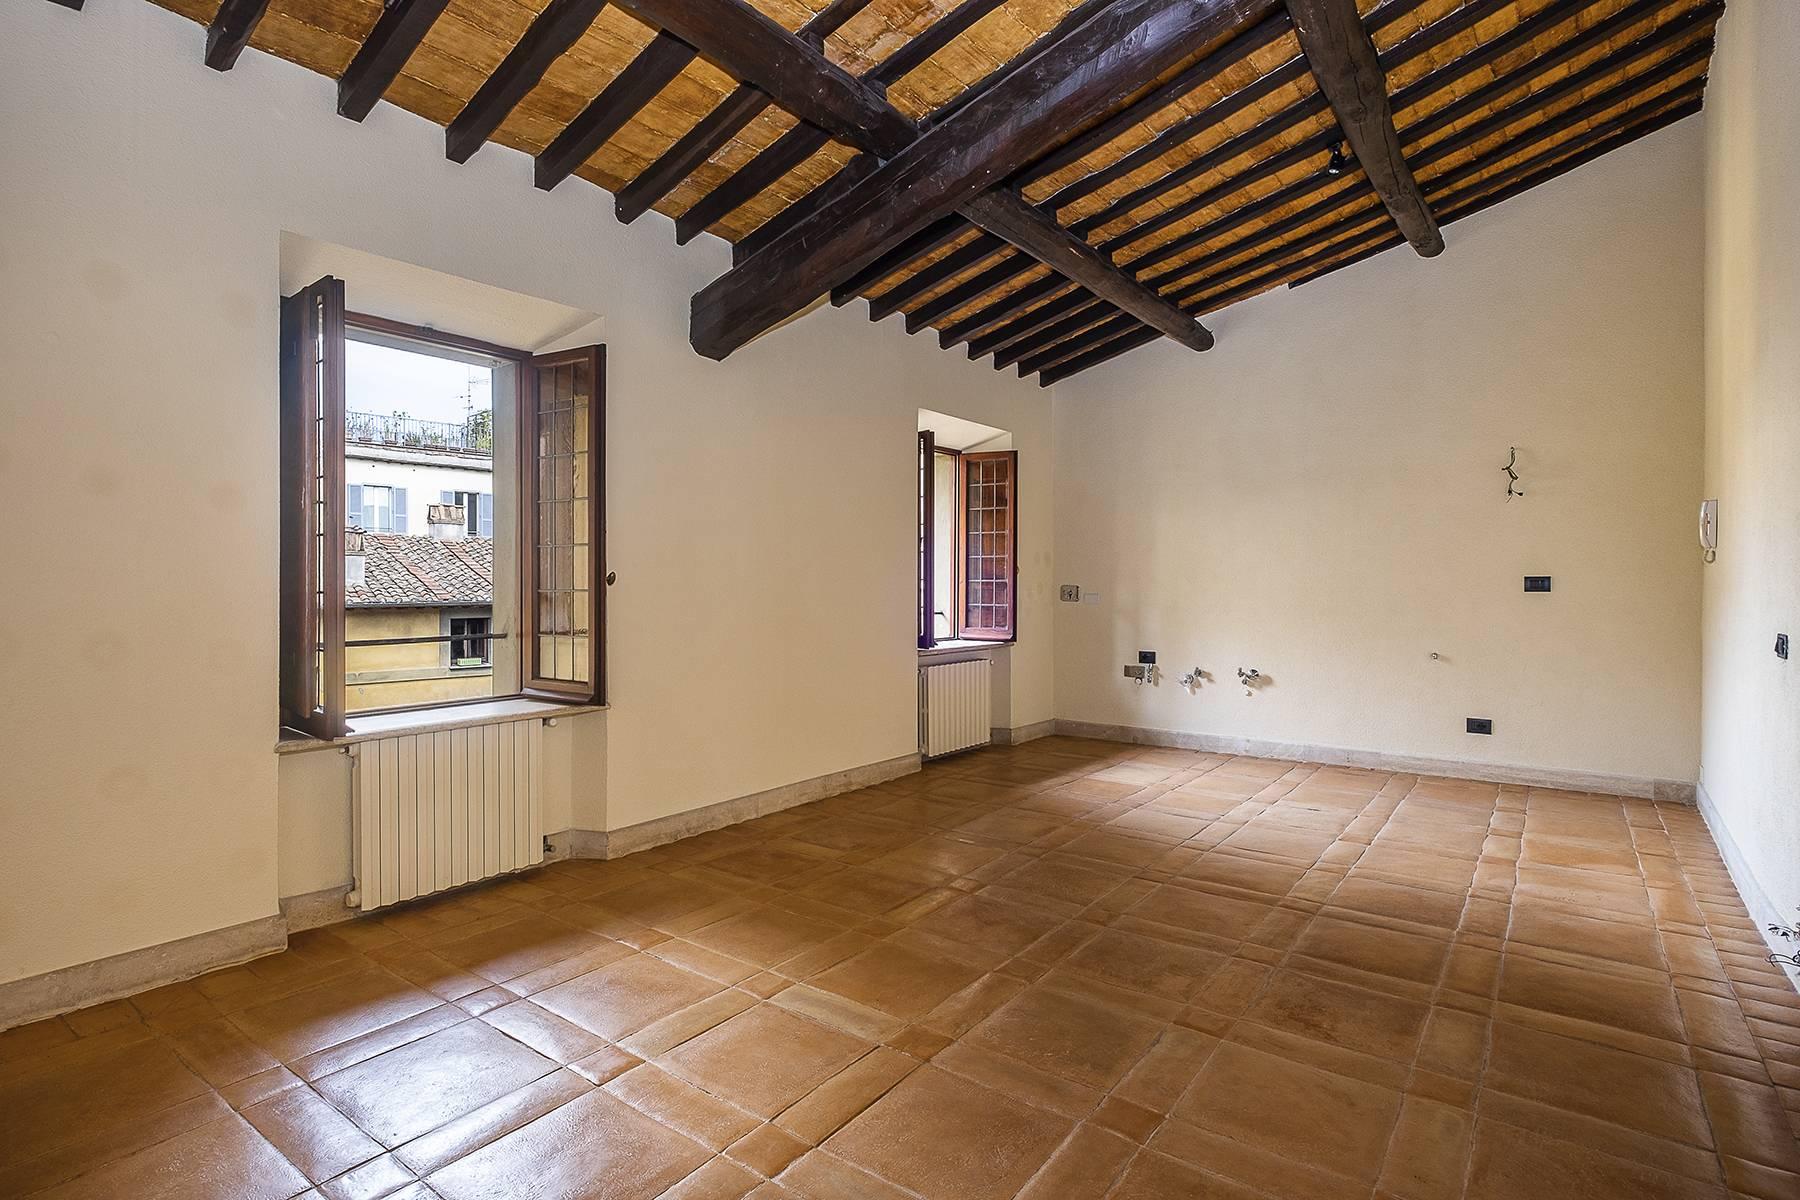 Esclusivo appartamento in centro storico con vista sui tetti di Roma - 21